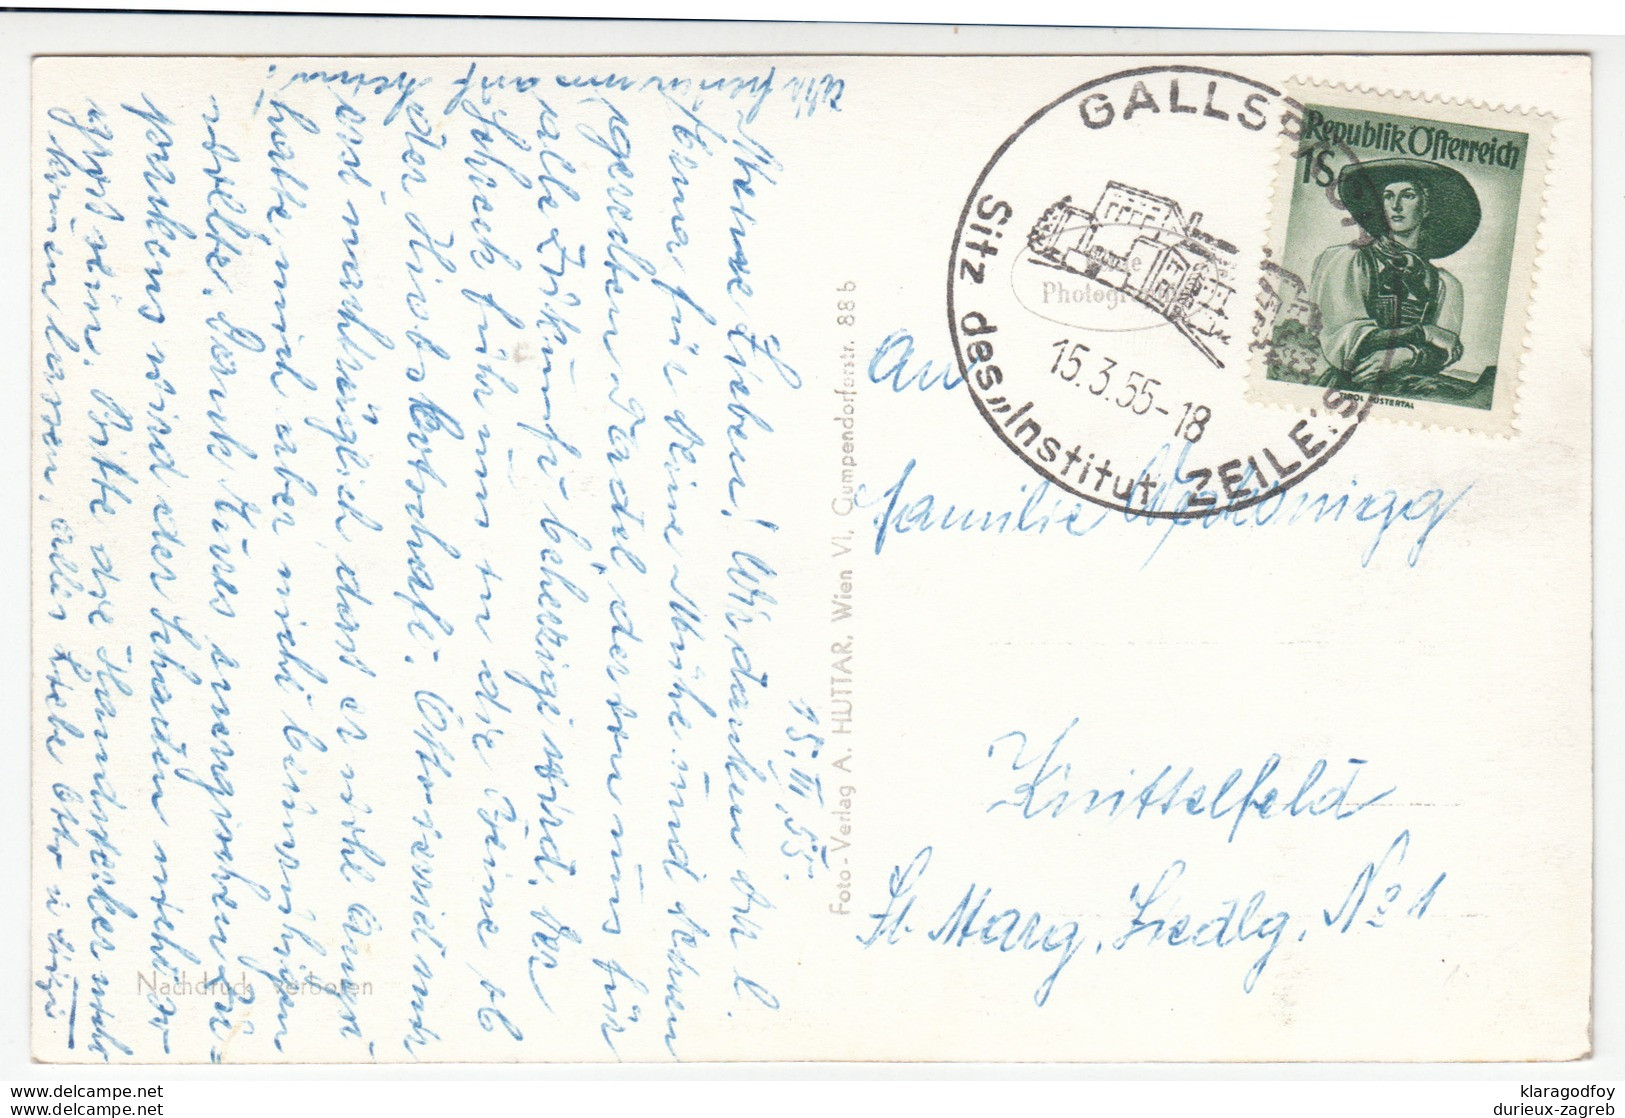 Gallspach, Institut Zeileis Old Postcard Travelled 1955 Gallspach Special Pmk B170830 - Gallspach